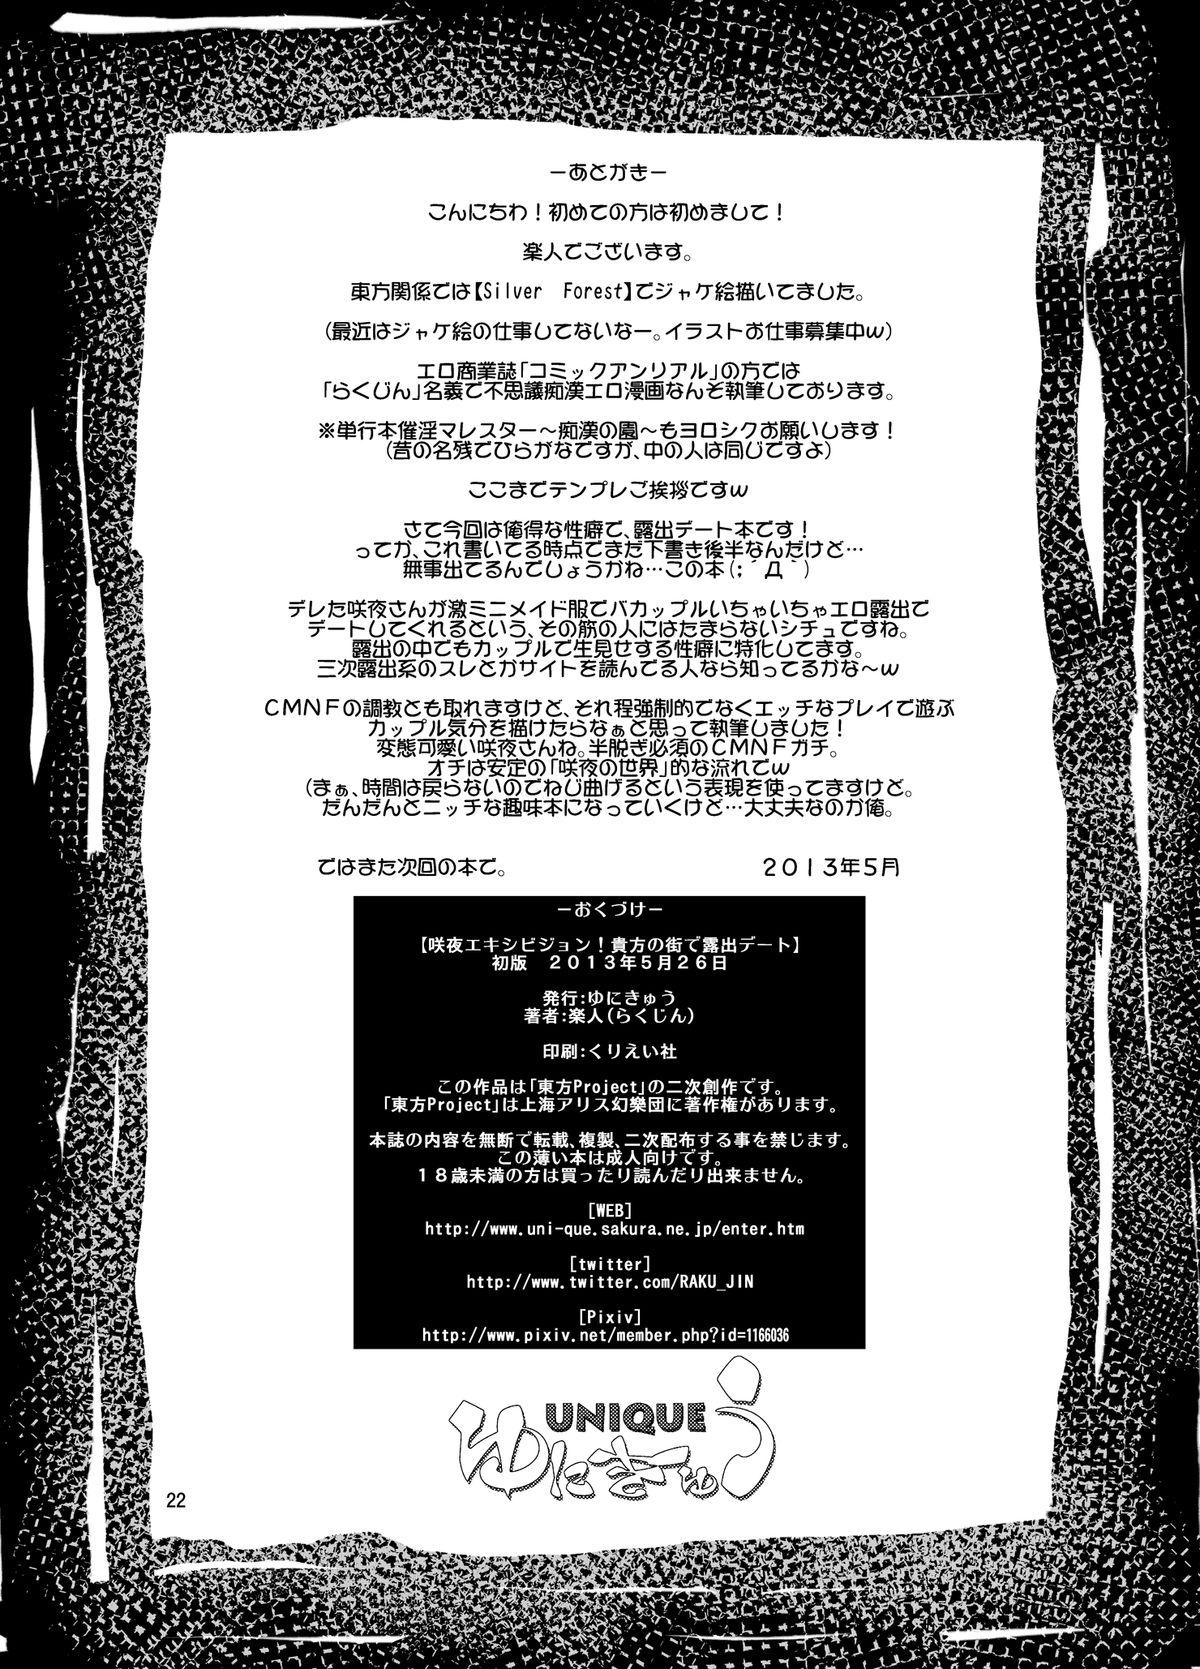 Sakuya Exhibition! Anata no Machi de Roshutsu Date 21